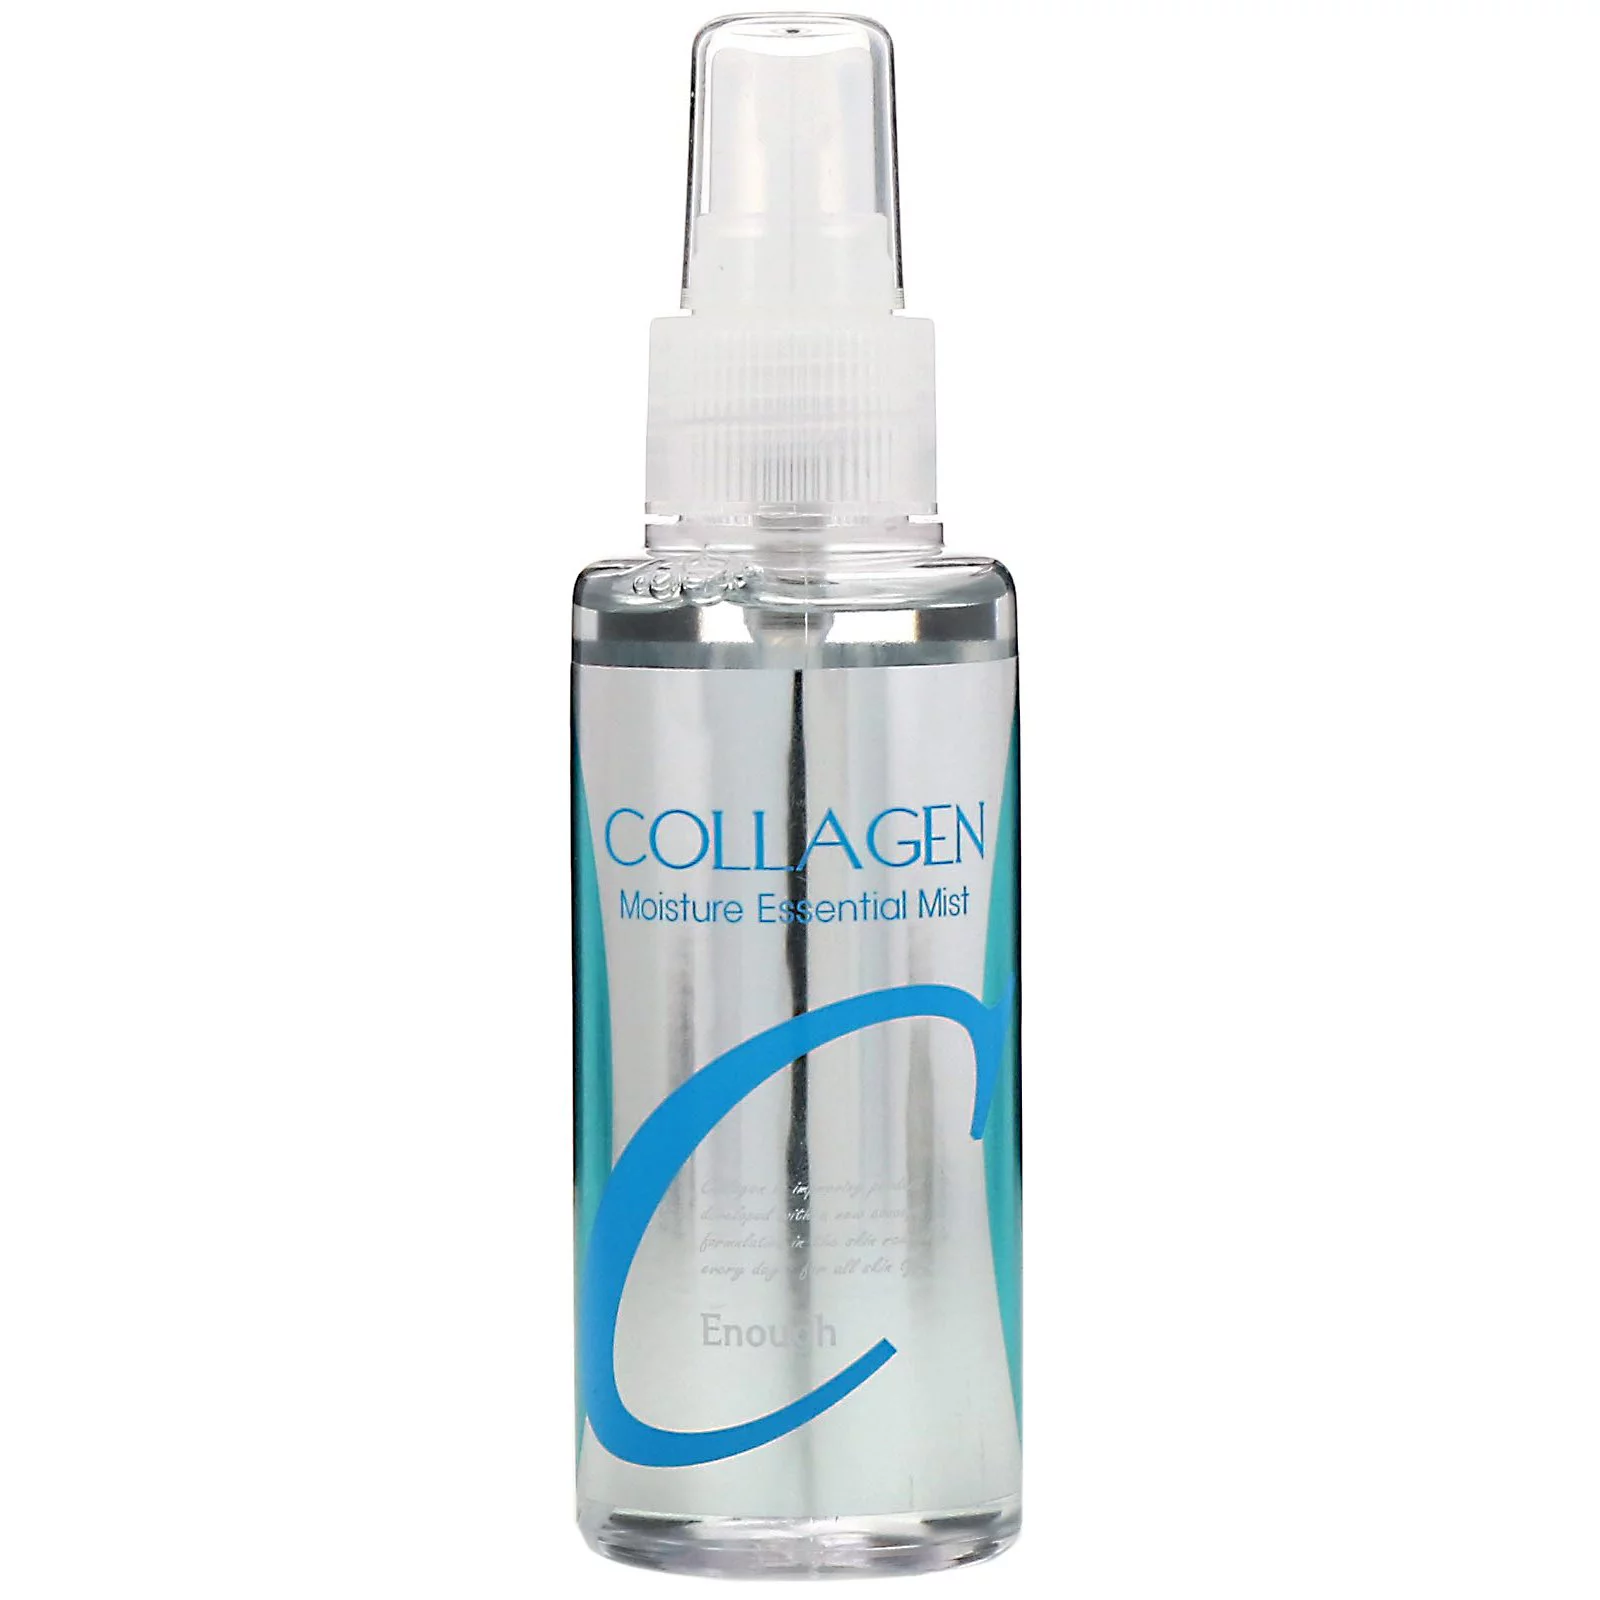 ENOUGH Collagen moisture essential mist 100ml